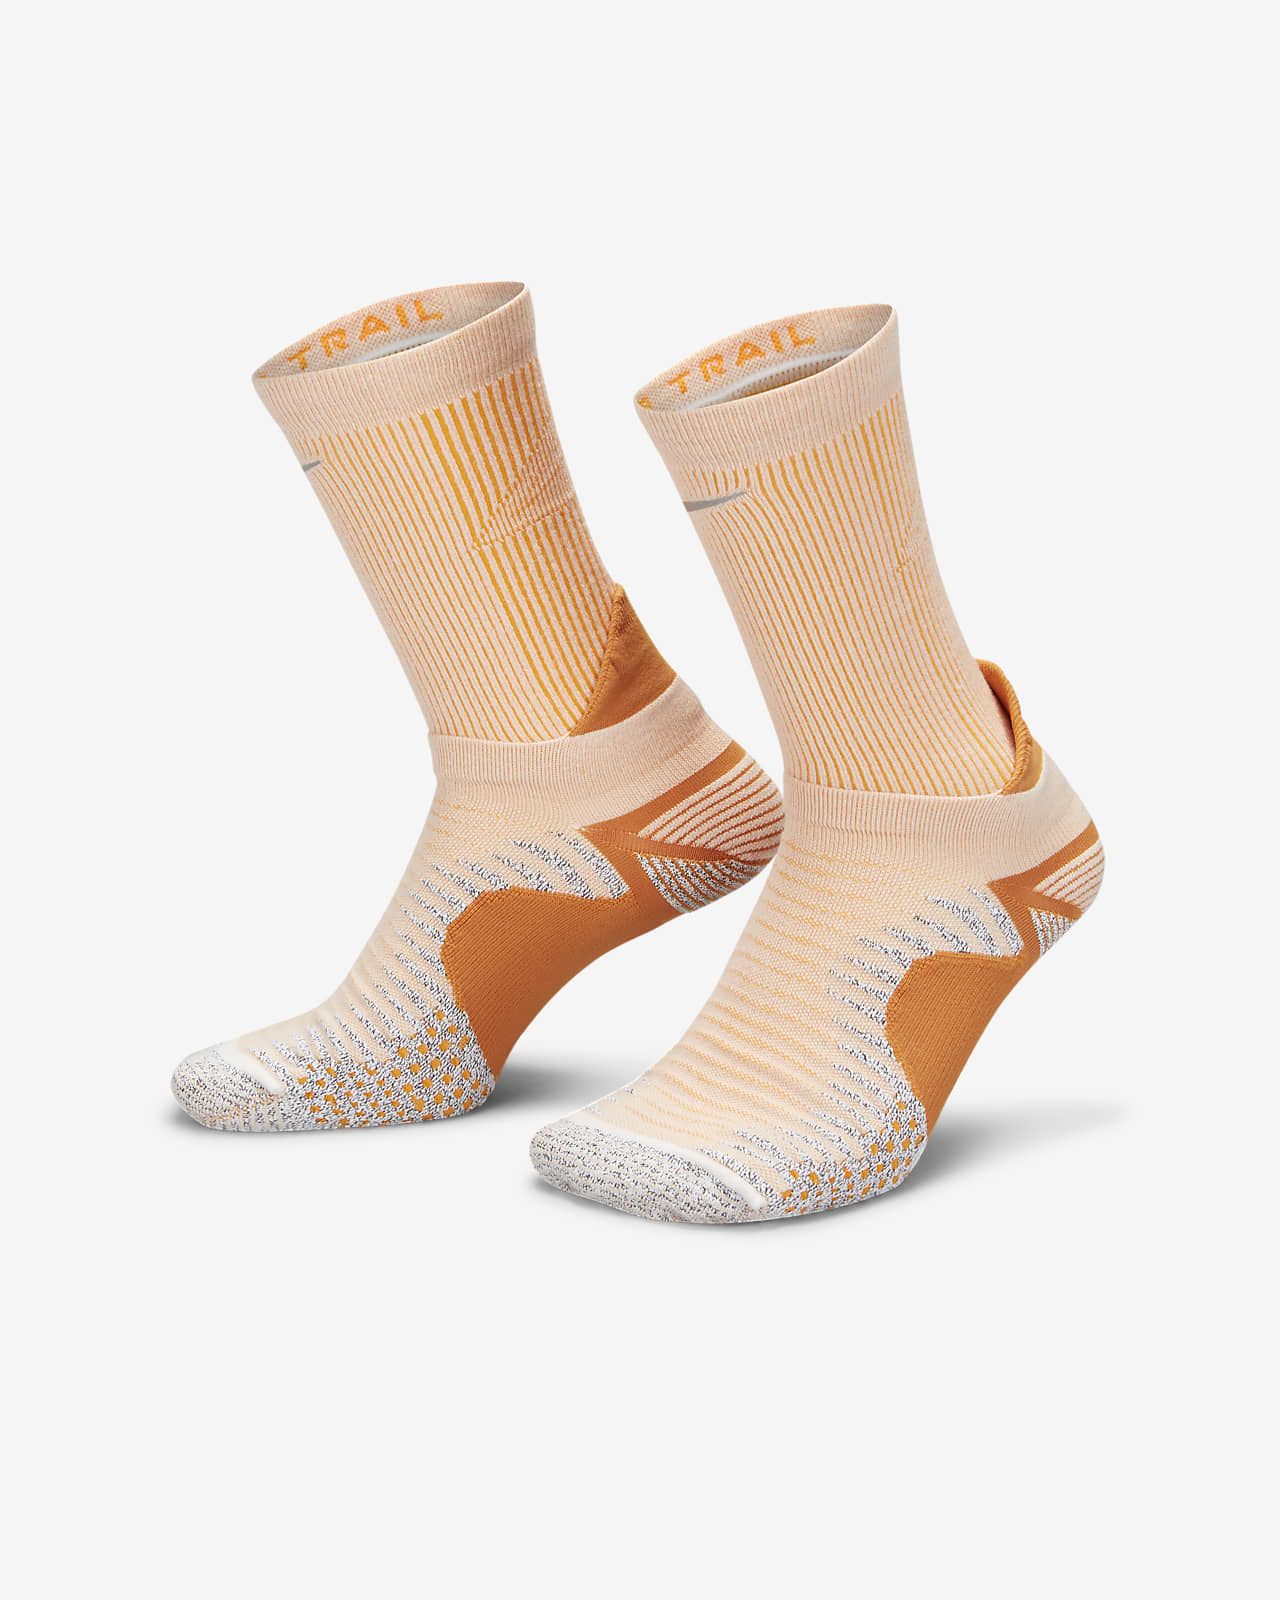 Nike Dri-FIT Trail-Running Crew Socks